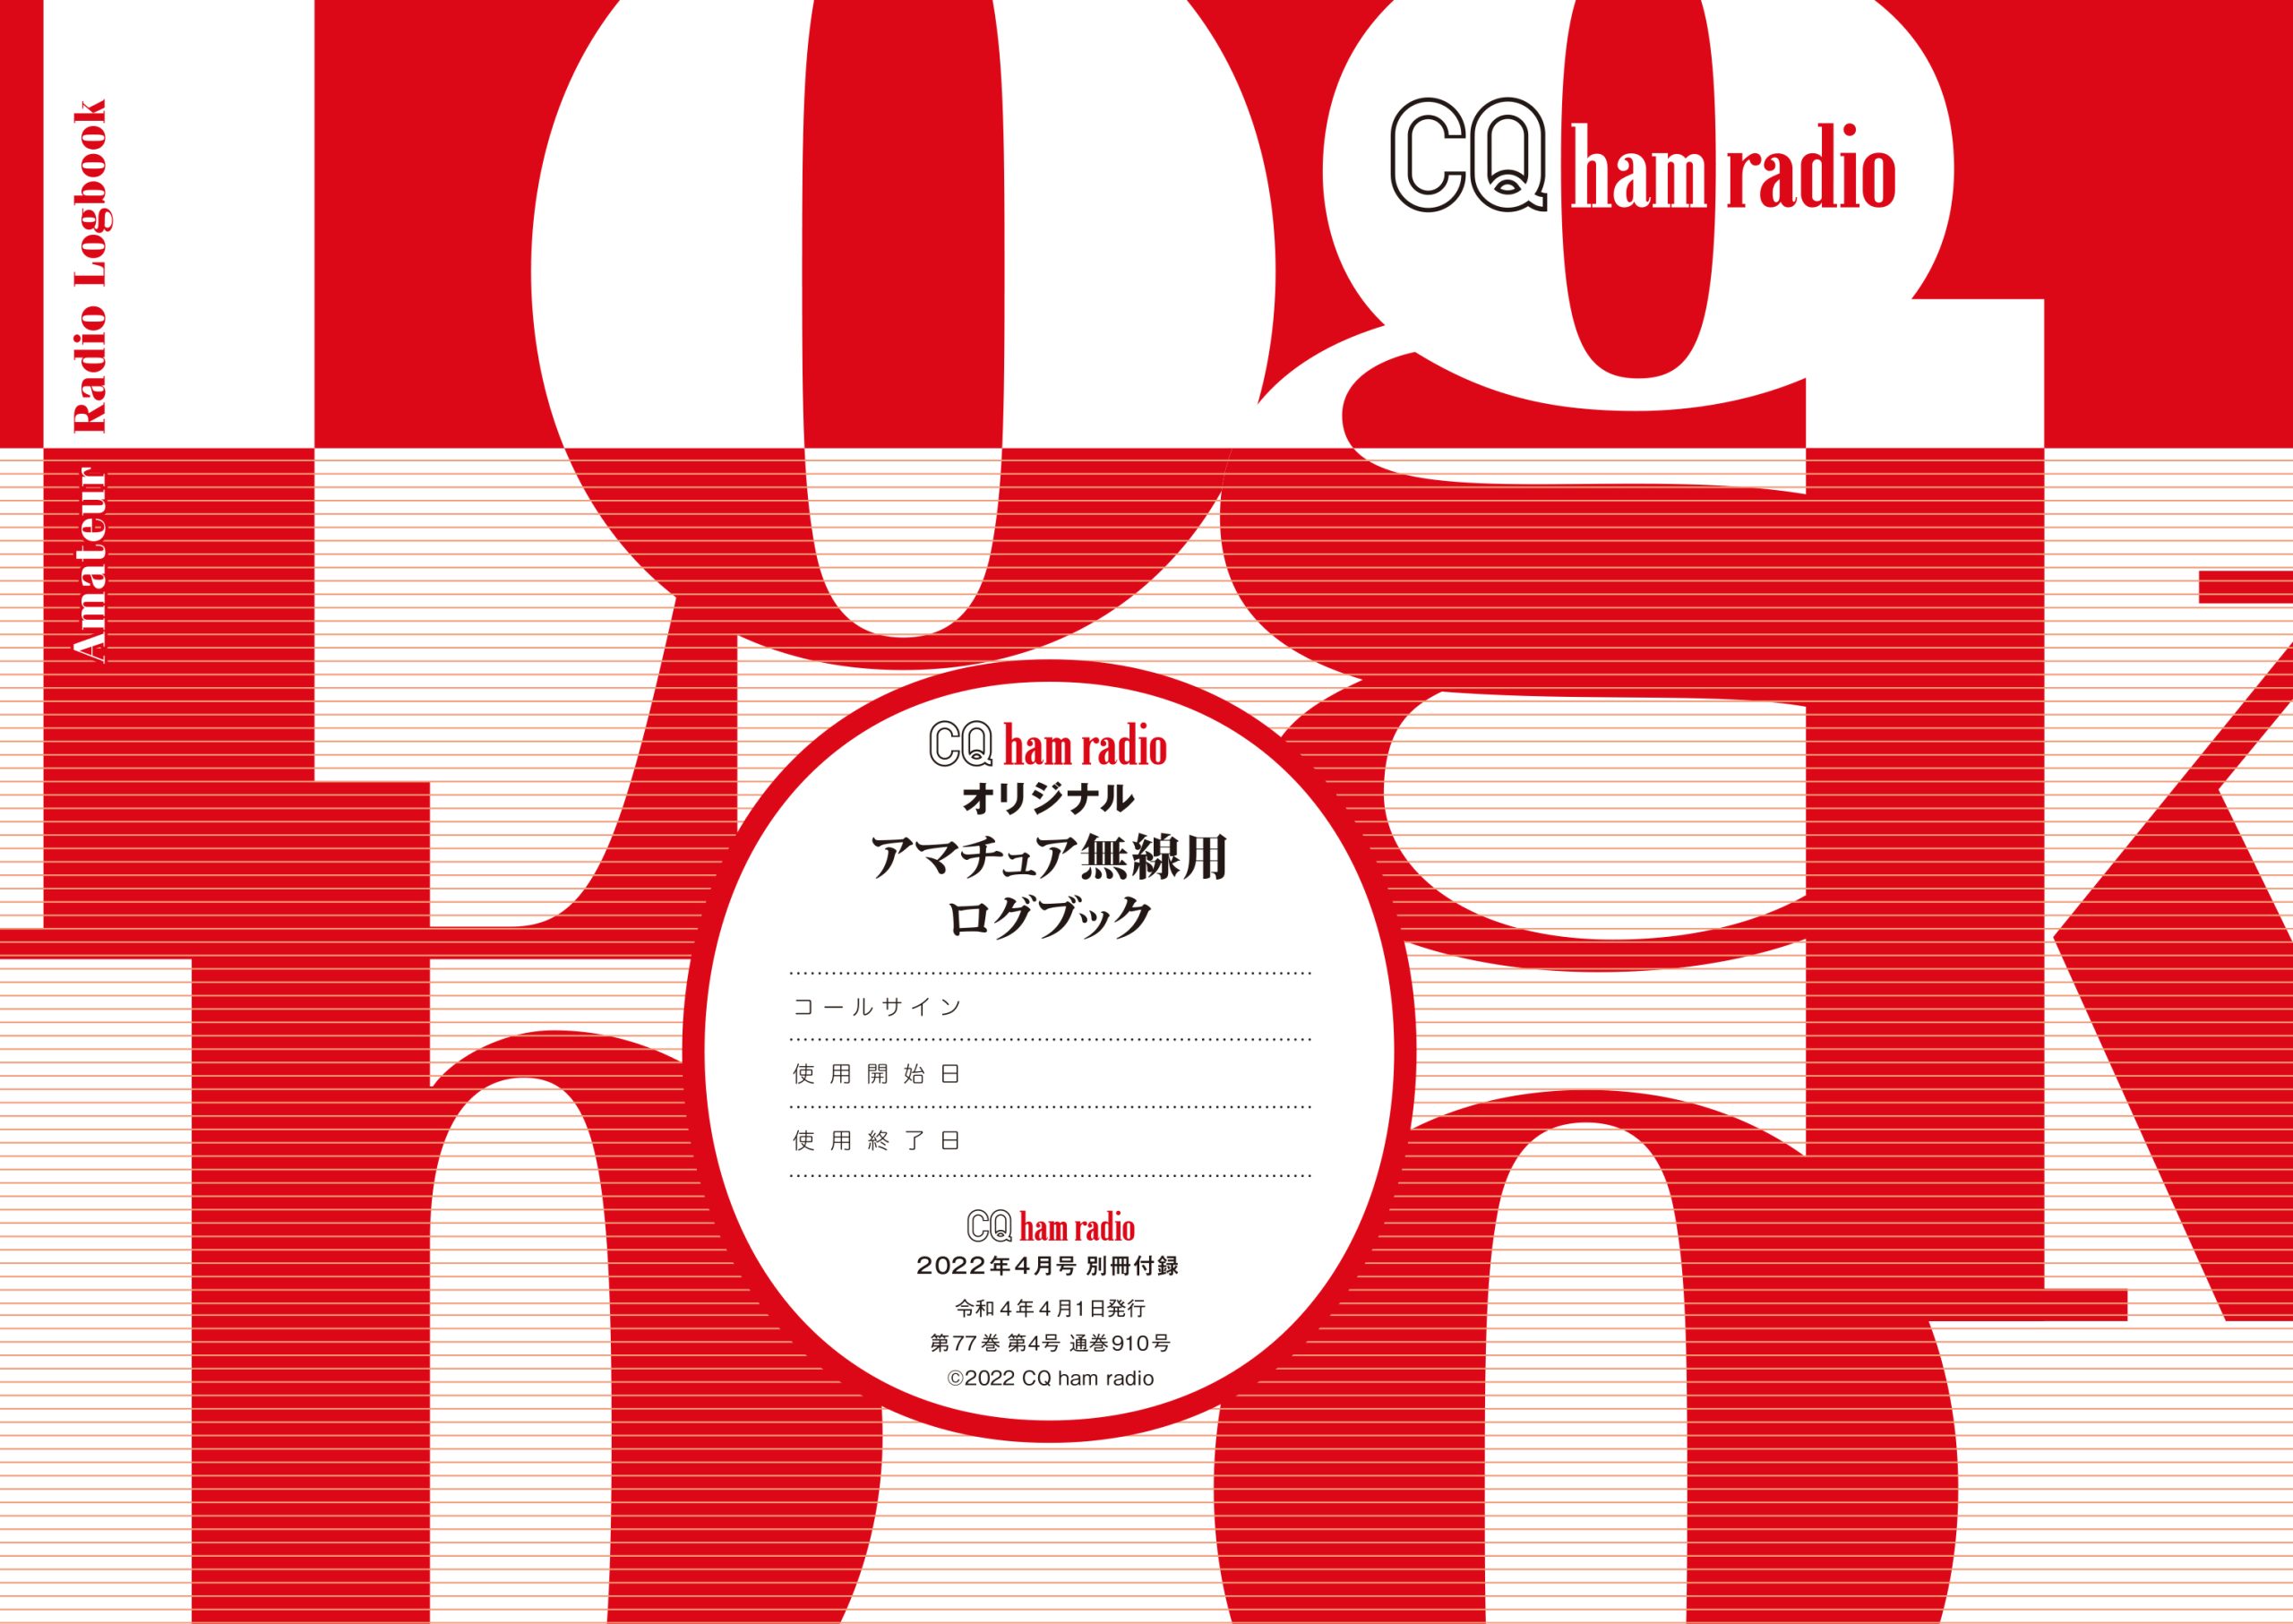 CQ ham radio 2022年4月号 別冊付録 CQ ham radio オリジナル アマチュア無線用ログブック